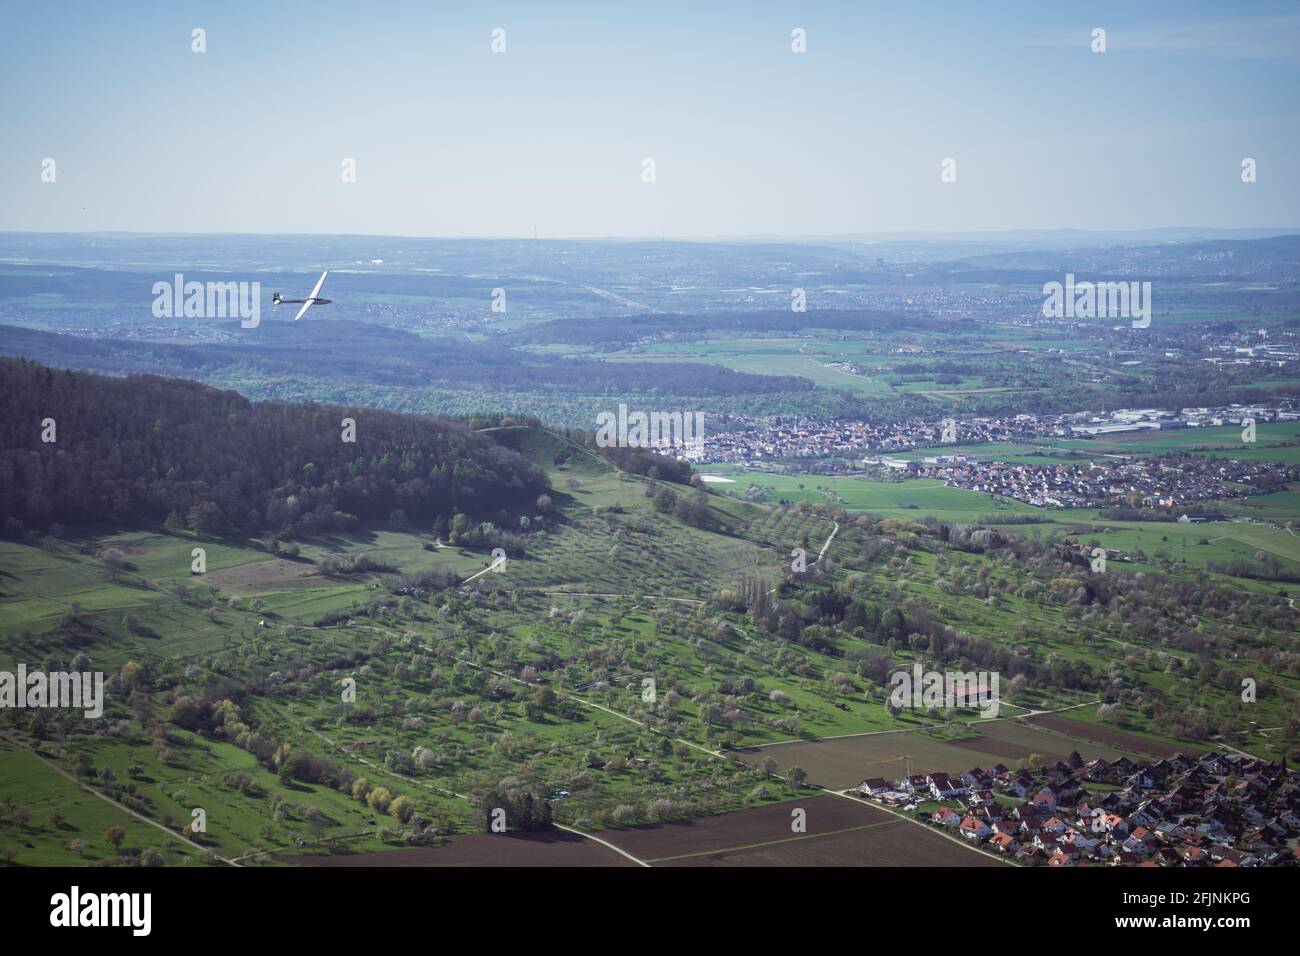 Der Segelflieger schwebt über ein Tal in Deutschland, in der Nähe von Stuttgart. Blick von einer Klippe zeigt die ländlichen Dörfer, viele Felder und Bäume in einem besiedelten Gebiet. Stockfoto